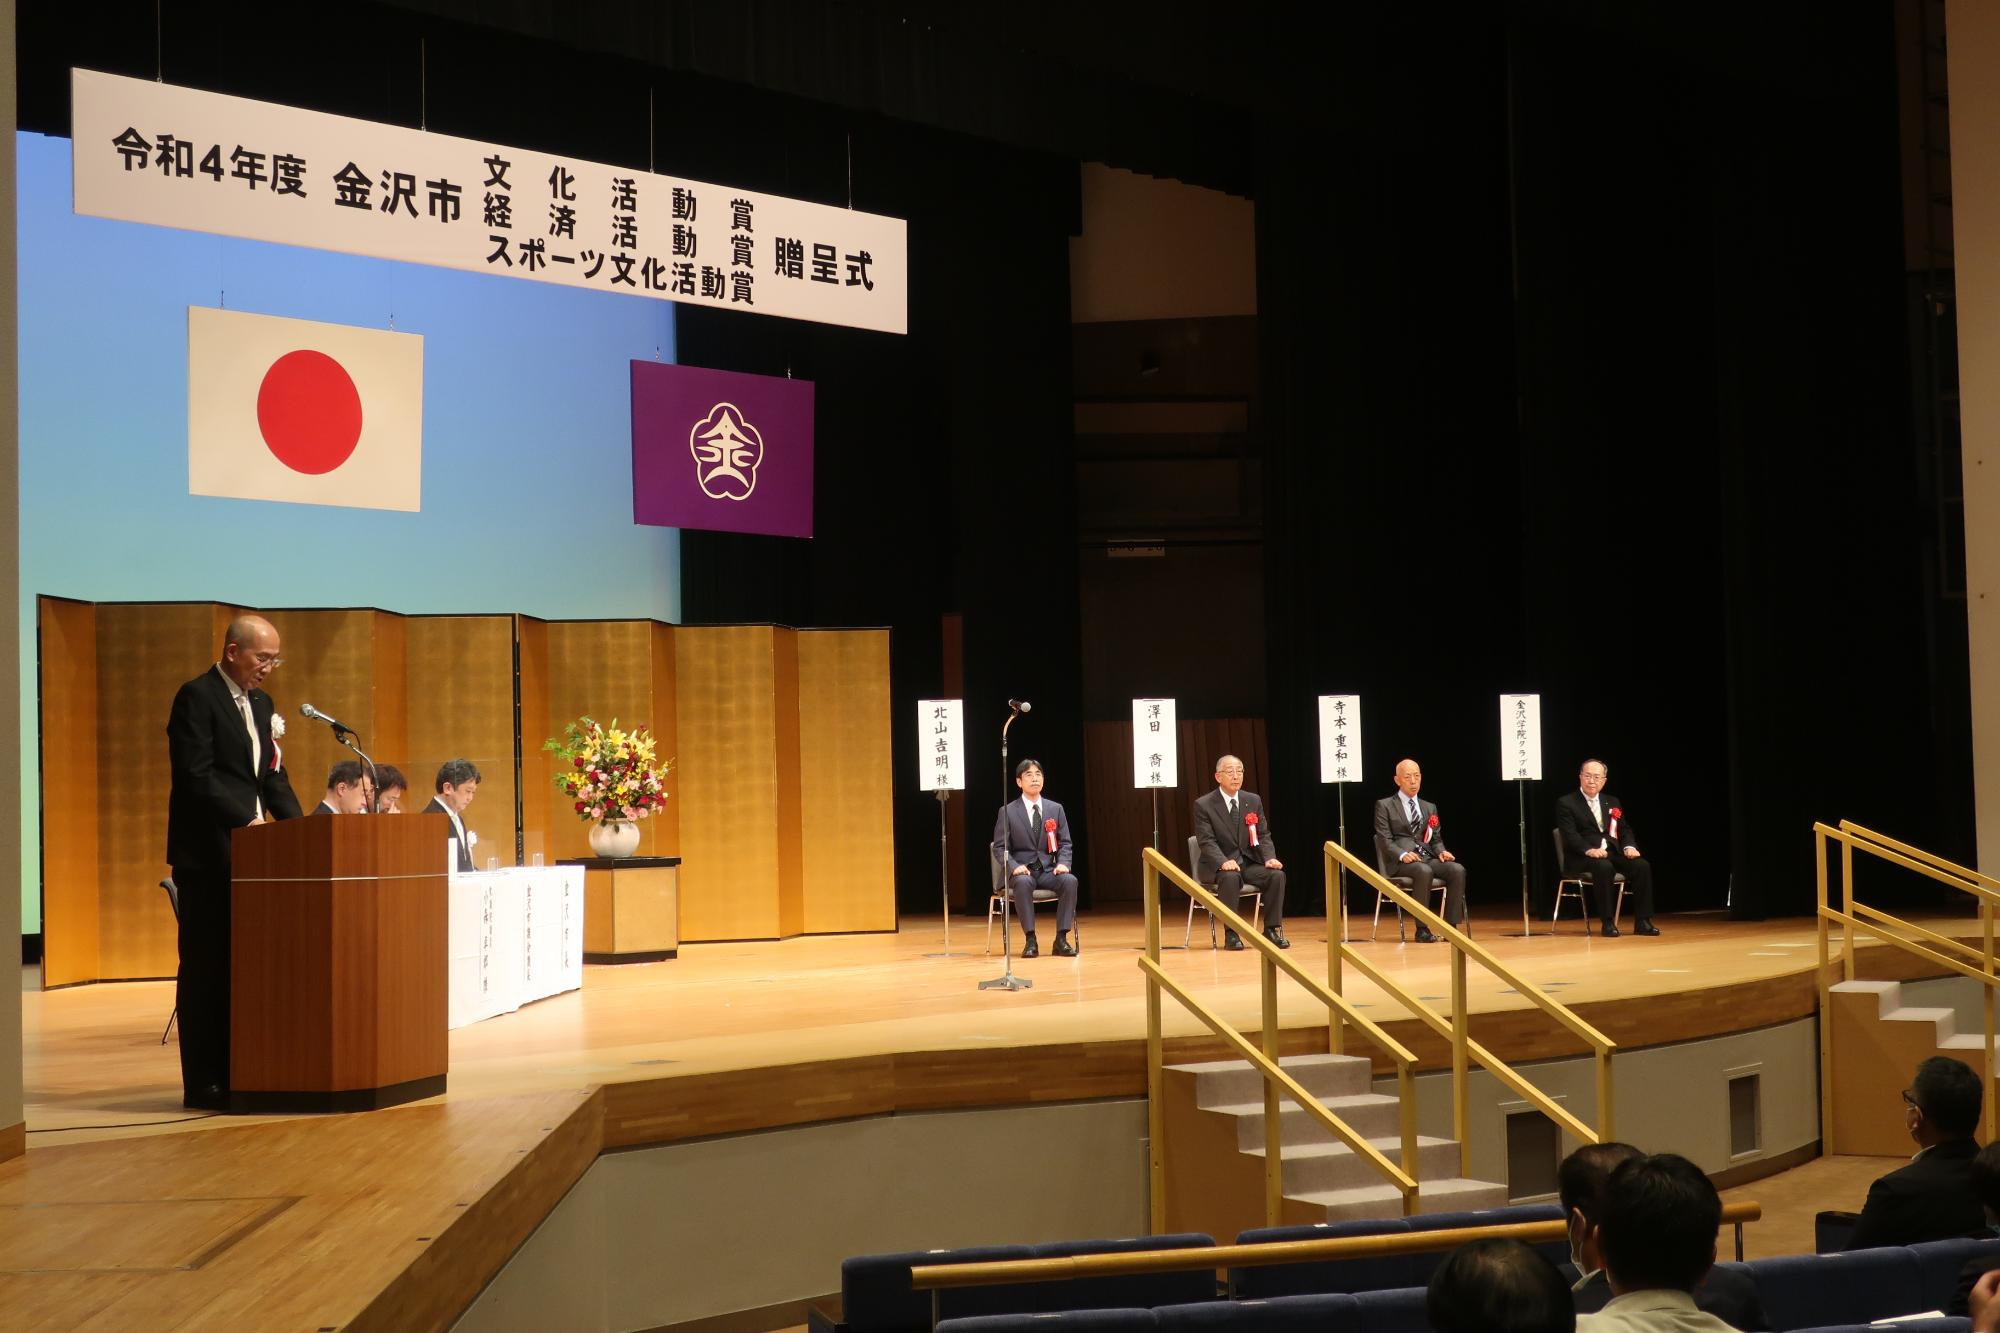 壇上の左側で山田副市長が選考結果を報告しており、右側に受賞者が着席している